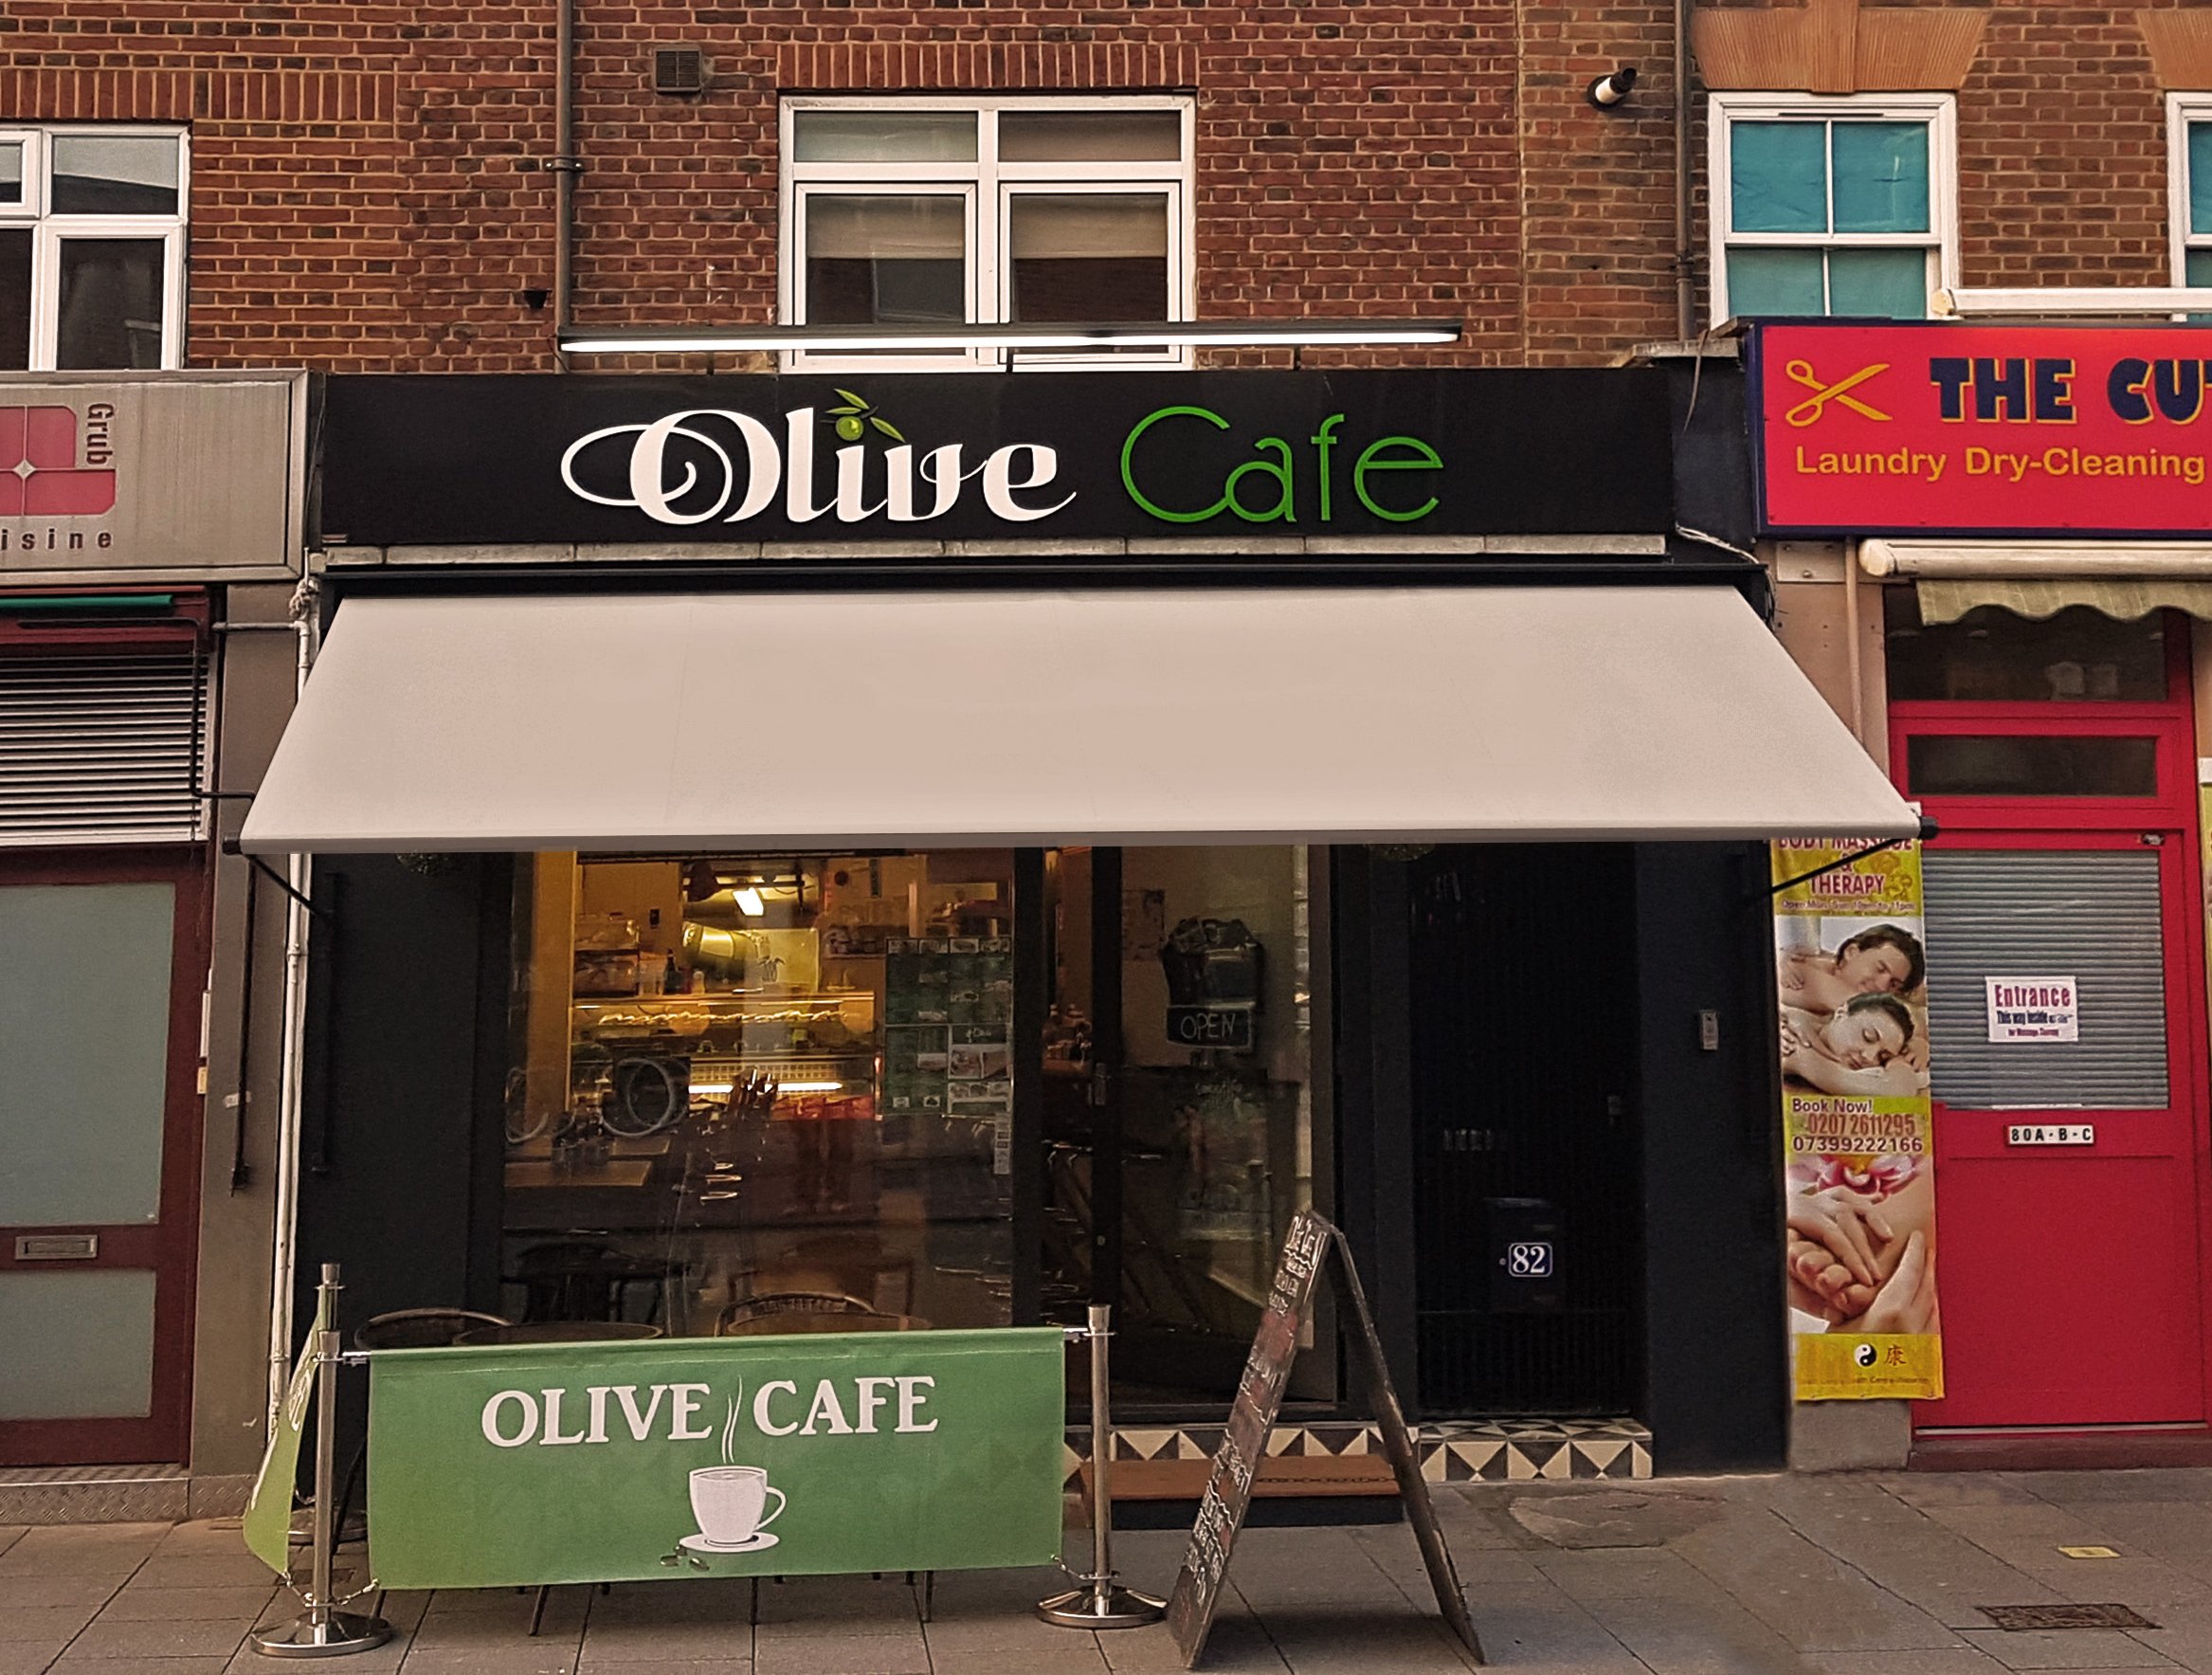 Olive cafe awning